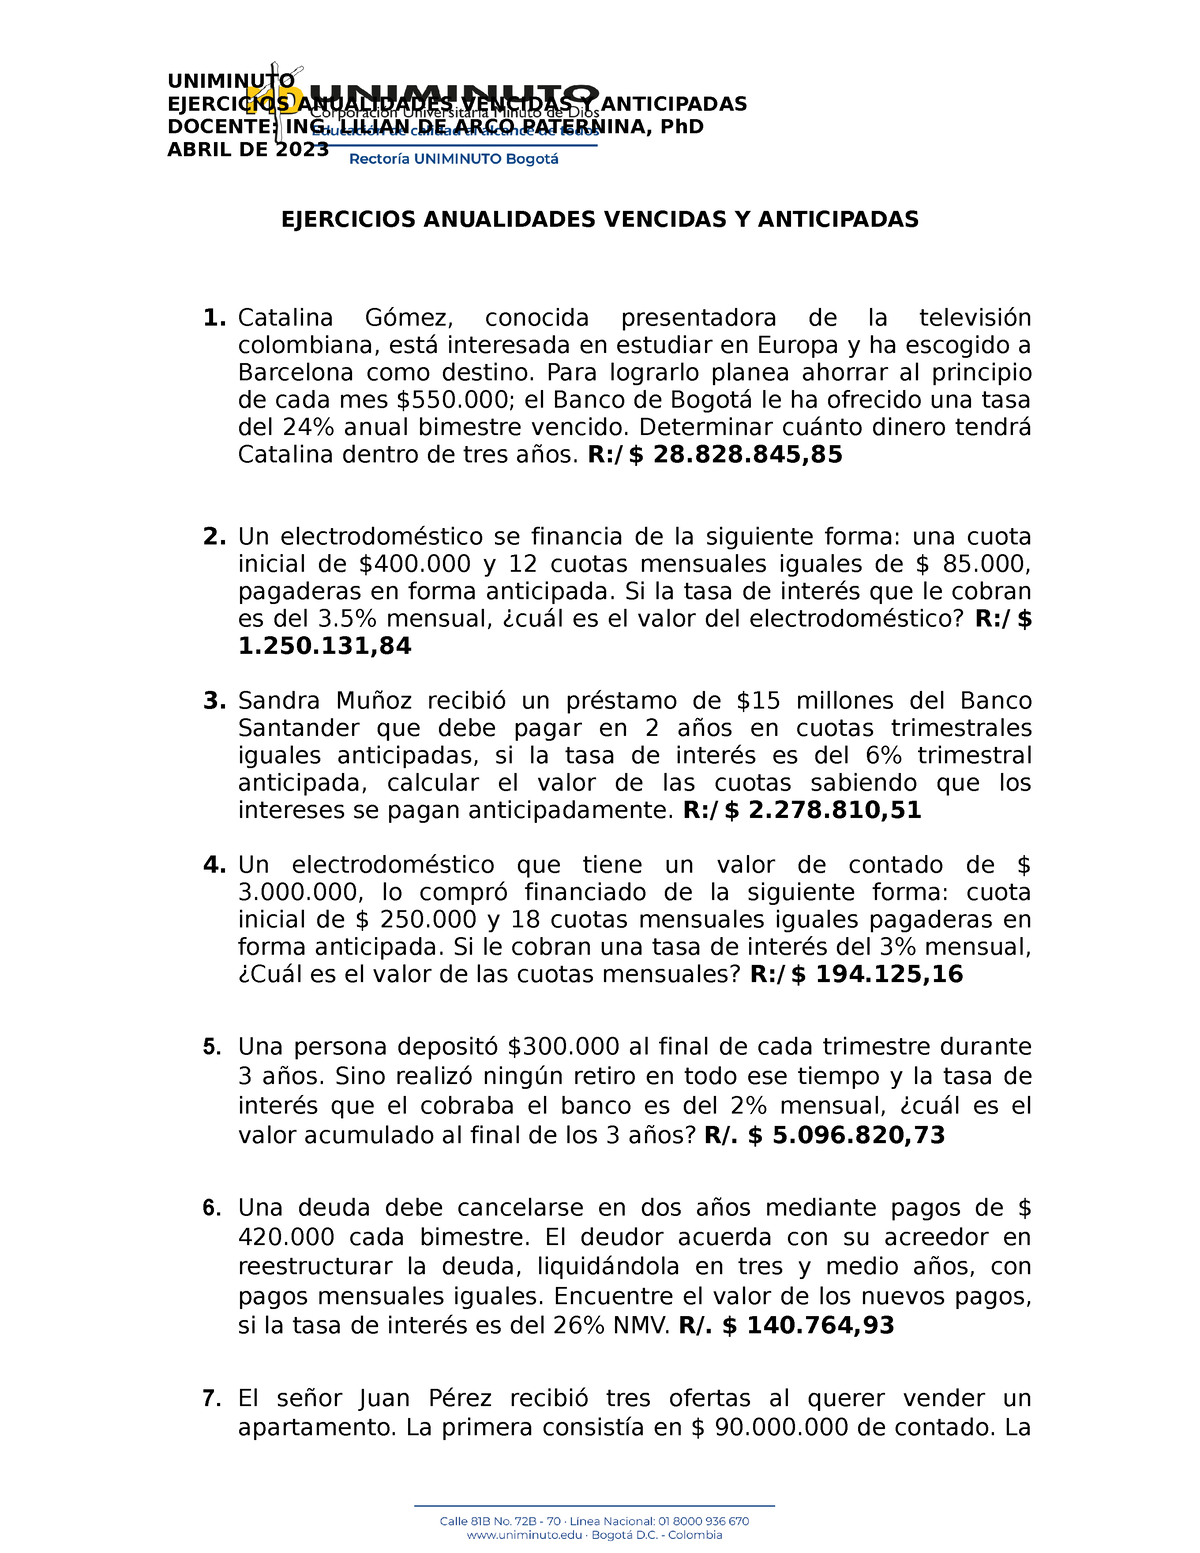 Ejercicios En Clase Anualidad Vencida Y Anticipada 2023 2 Uniminuto Ejercicios Anualidades 7686